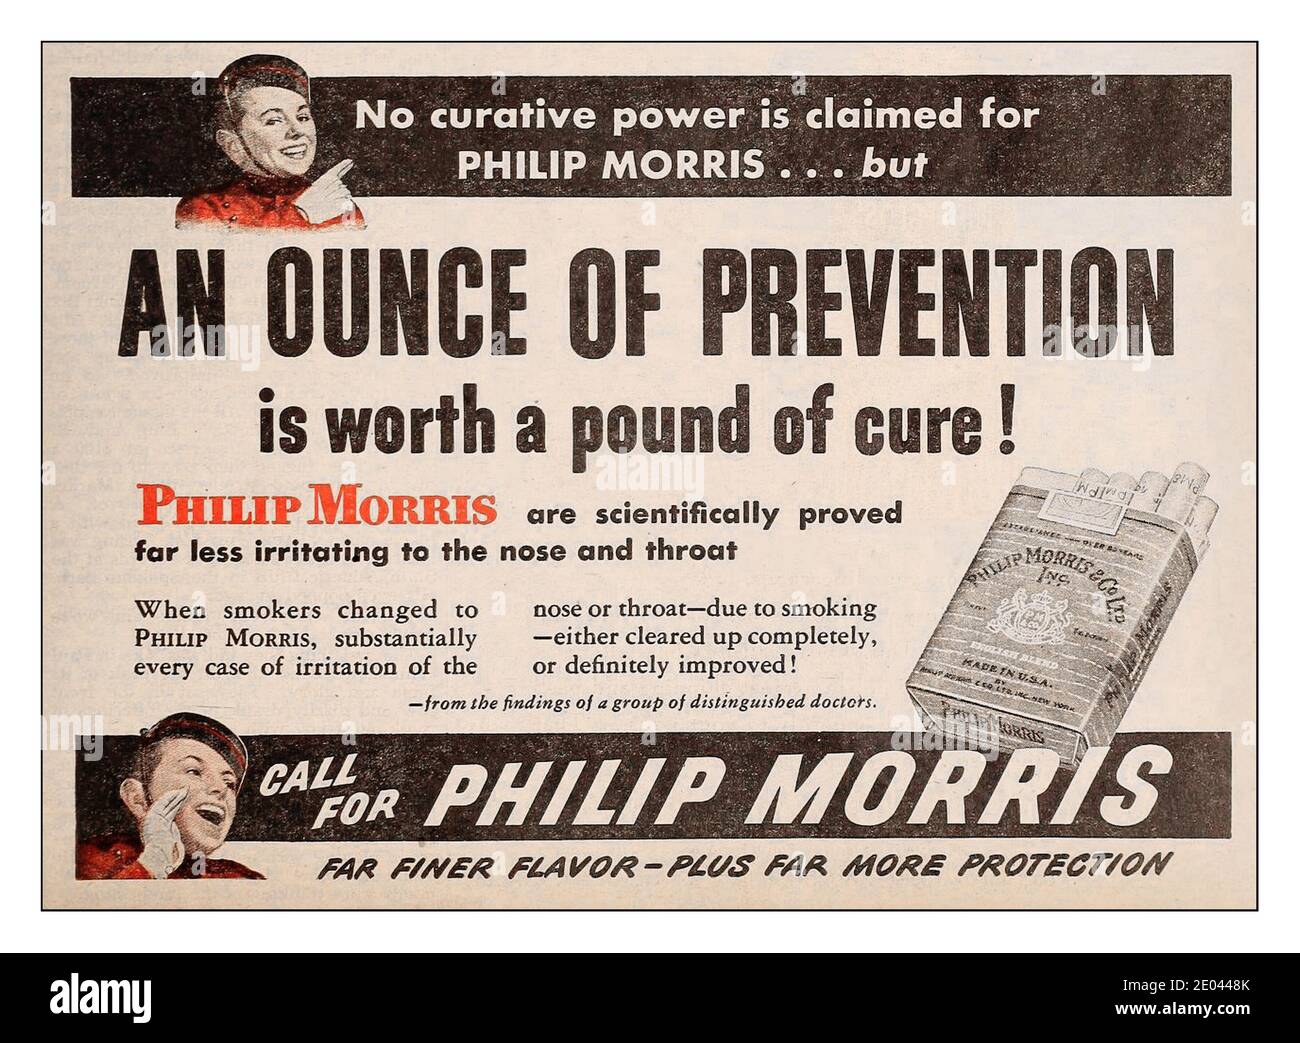 LA PUBLICITÉ ANCIENNE SUR LES CIGARETTES PRÉTEND 1945 Philip Morris « une once de prévention vaut une livre de guérison » la publicité sur les cigarettes dans les années 1940 par un groupe distingué de médecins…. Banque D'Images